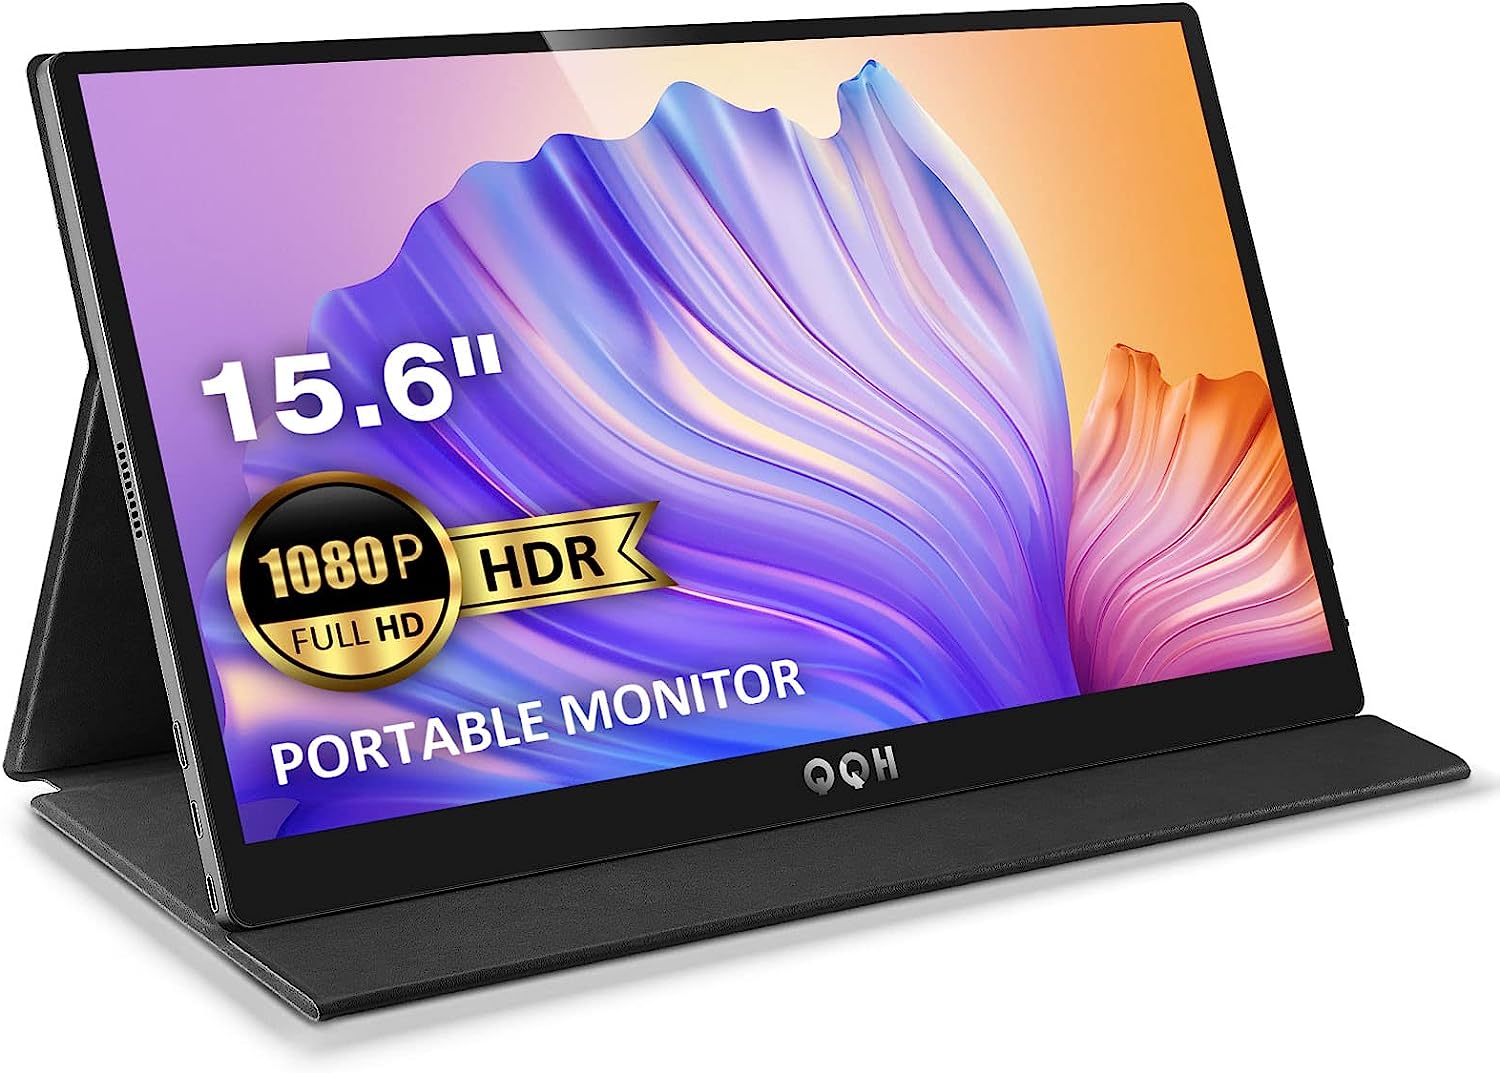 QQH Portable Monitor, 15.6", FHD 1080P USB C Computer  - $80